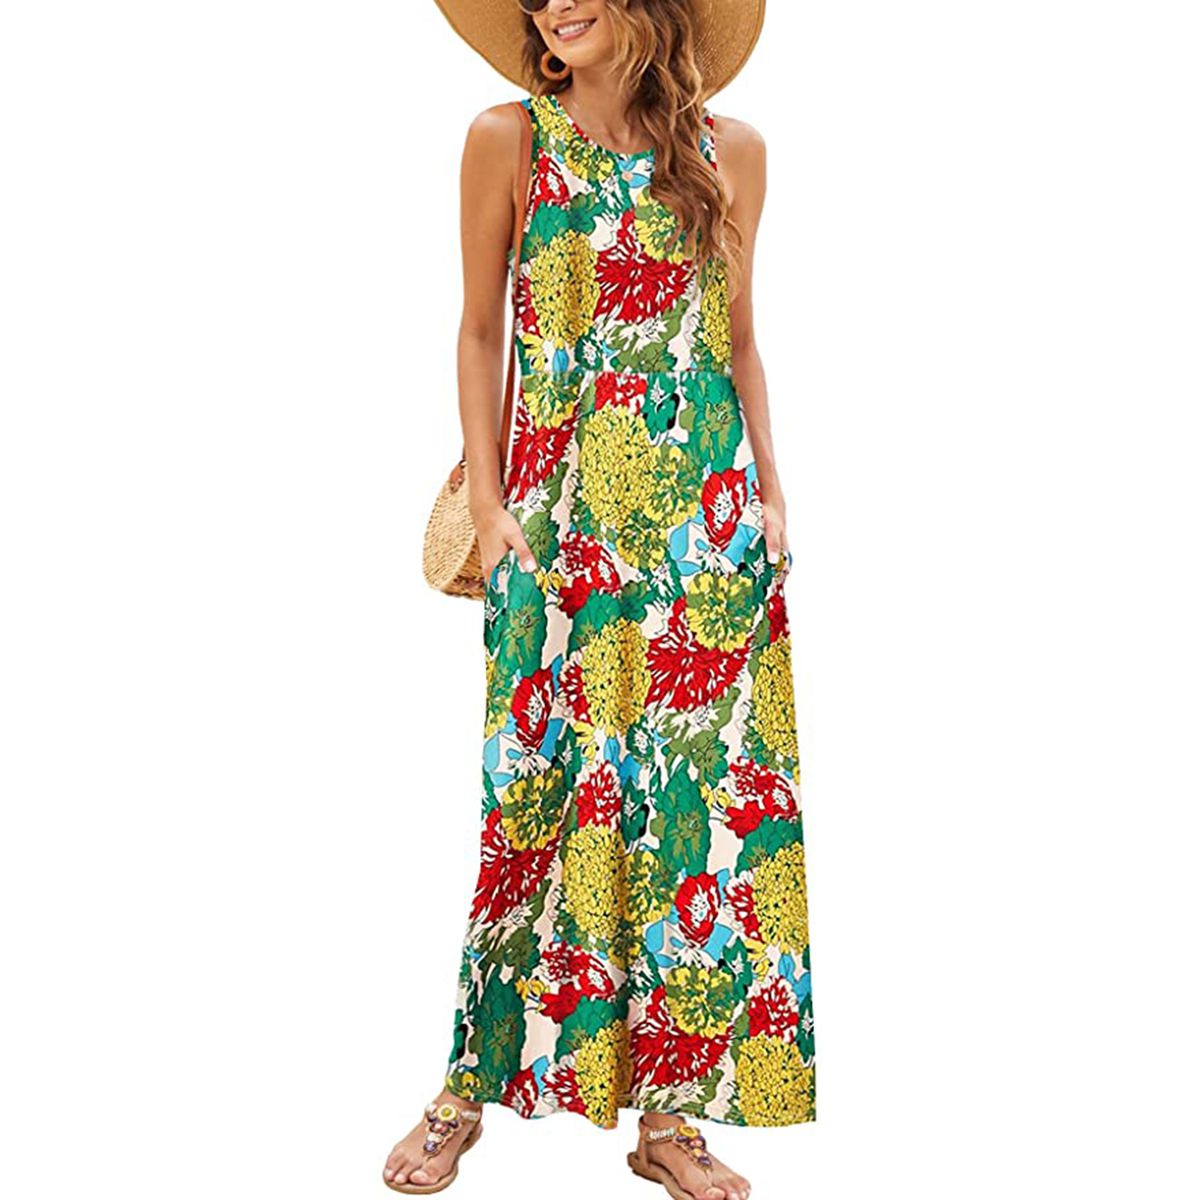 Comfortable Long Summer Dress Viscose Maxi Dress Long Sleeve Dress 50 % OFF SALE Colorful Bohemian Maxi Dress Dress Women Summer